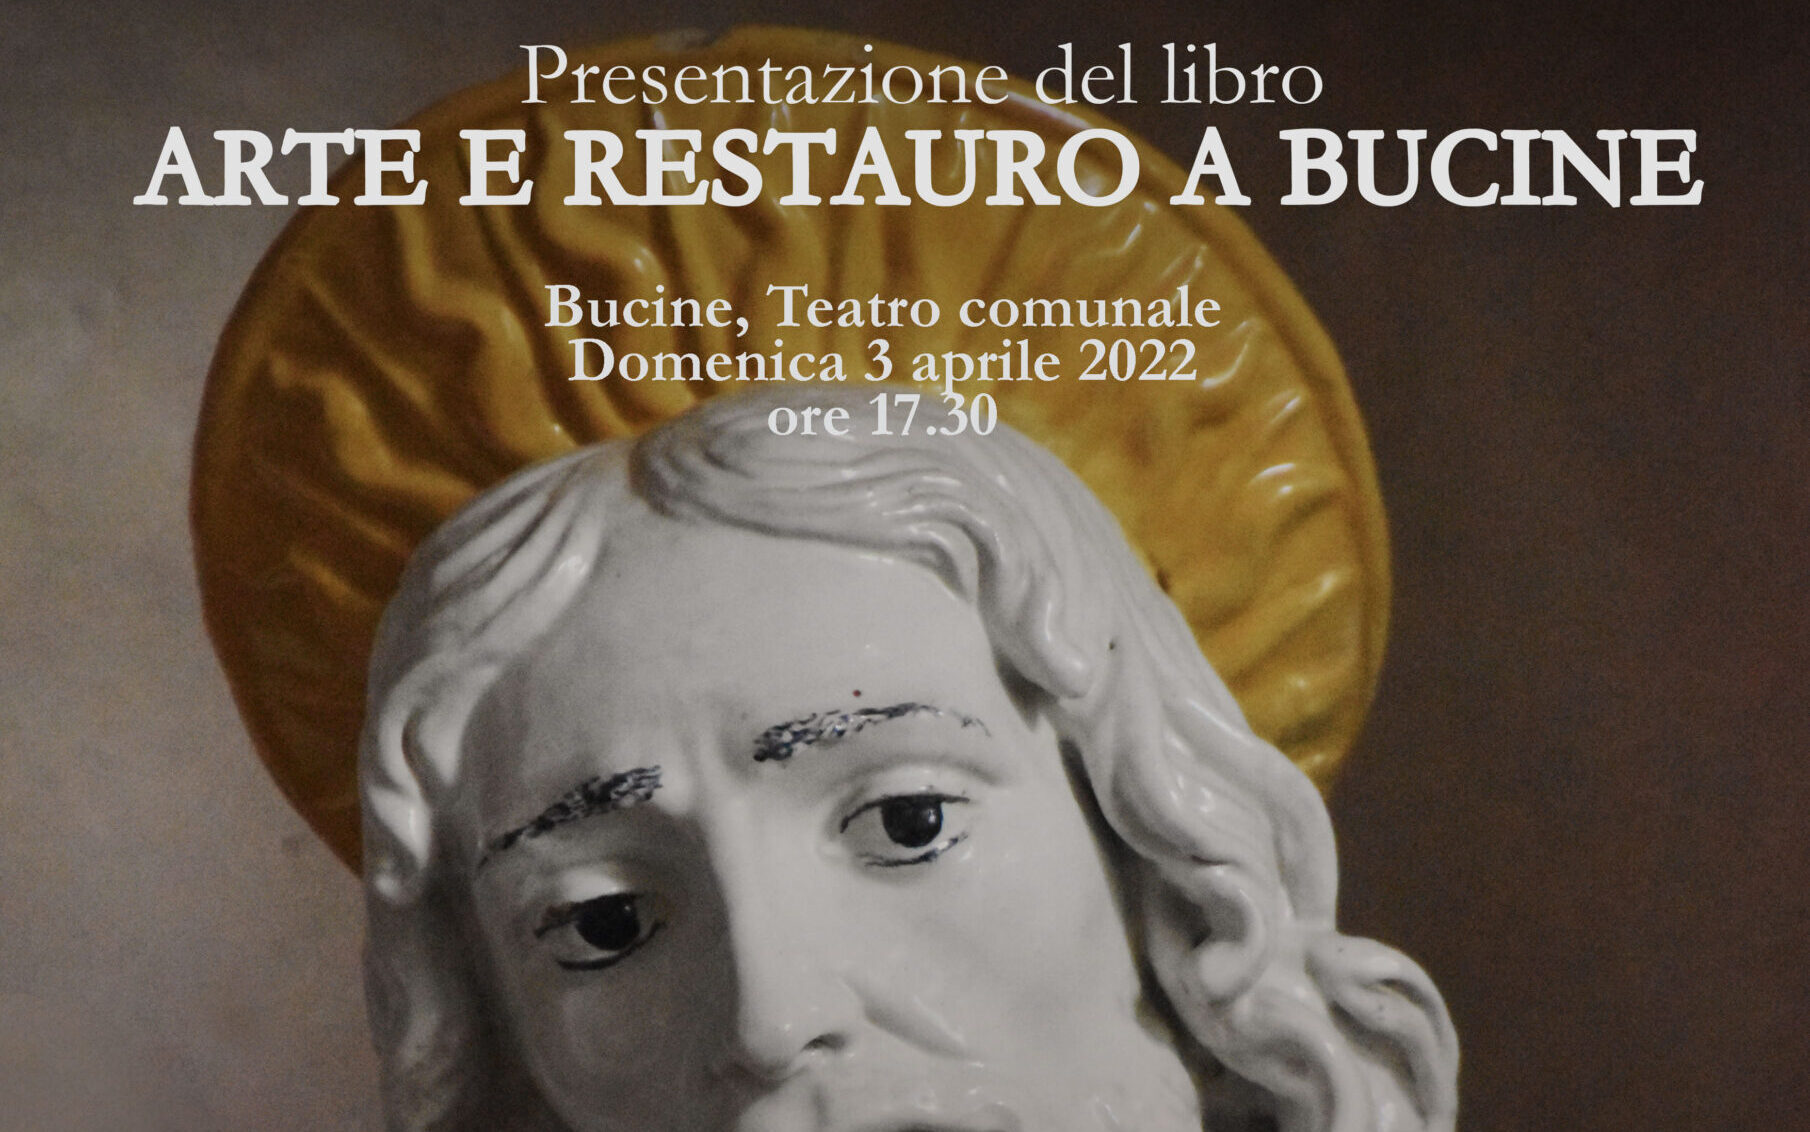 Teatro Comunale di Bucine: presentazione del volume “Arte e Restauro”